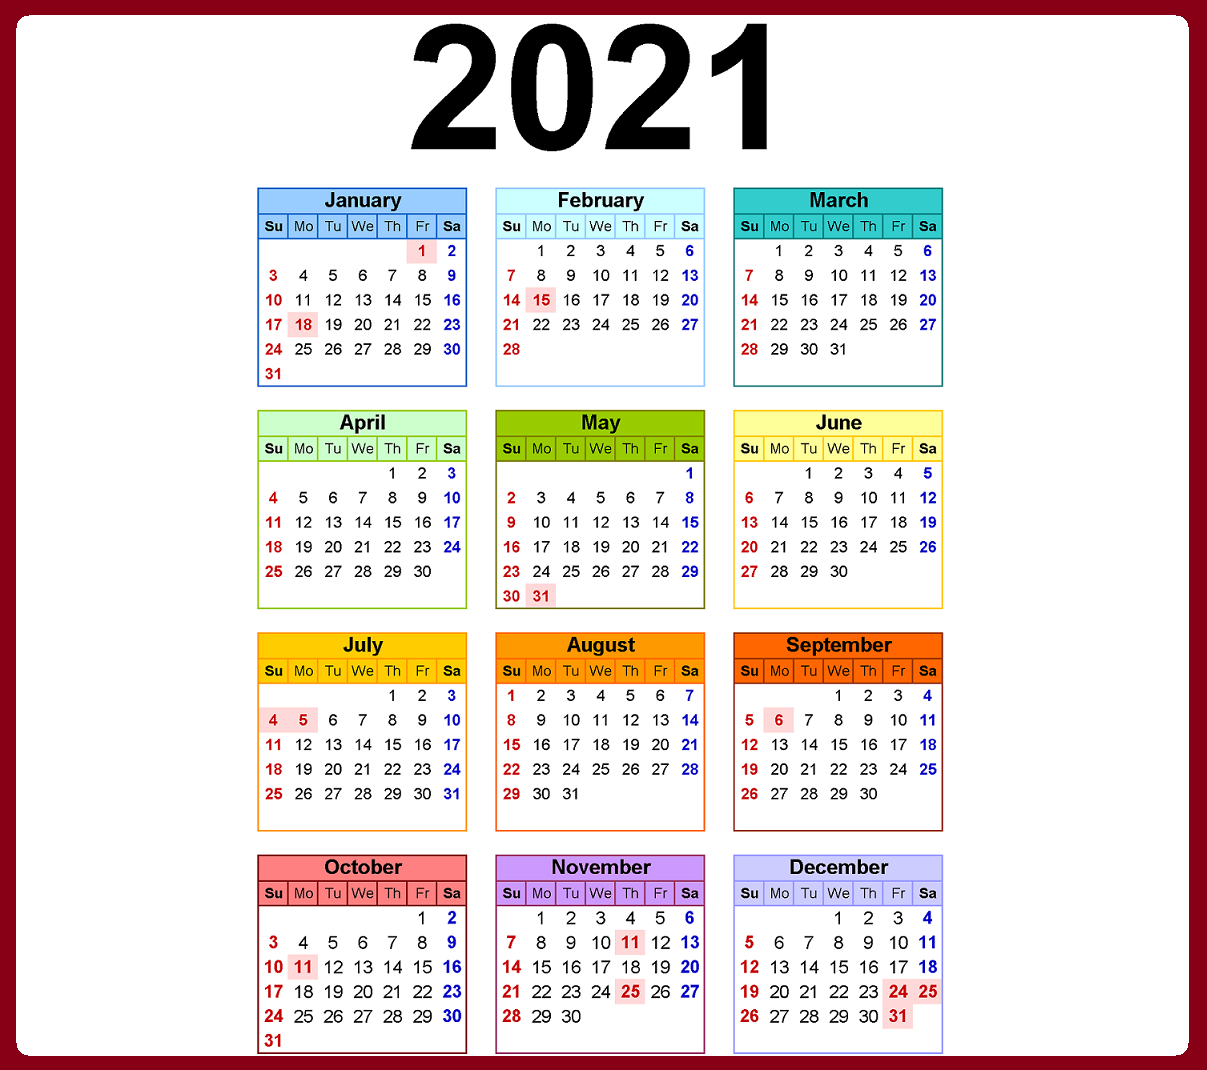 مواعيد العطلات والمناسبات الرسمية في مصر 2021 – نتيجة العام الميلادي 2021 والهجري 1442